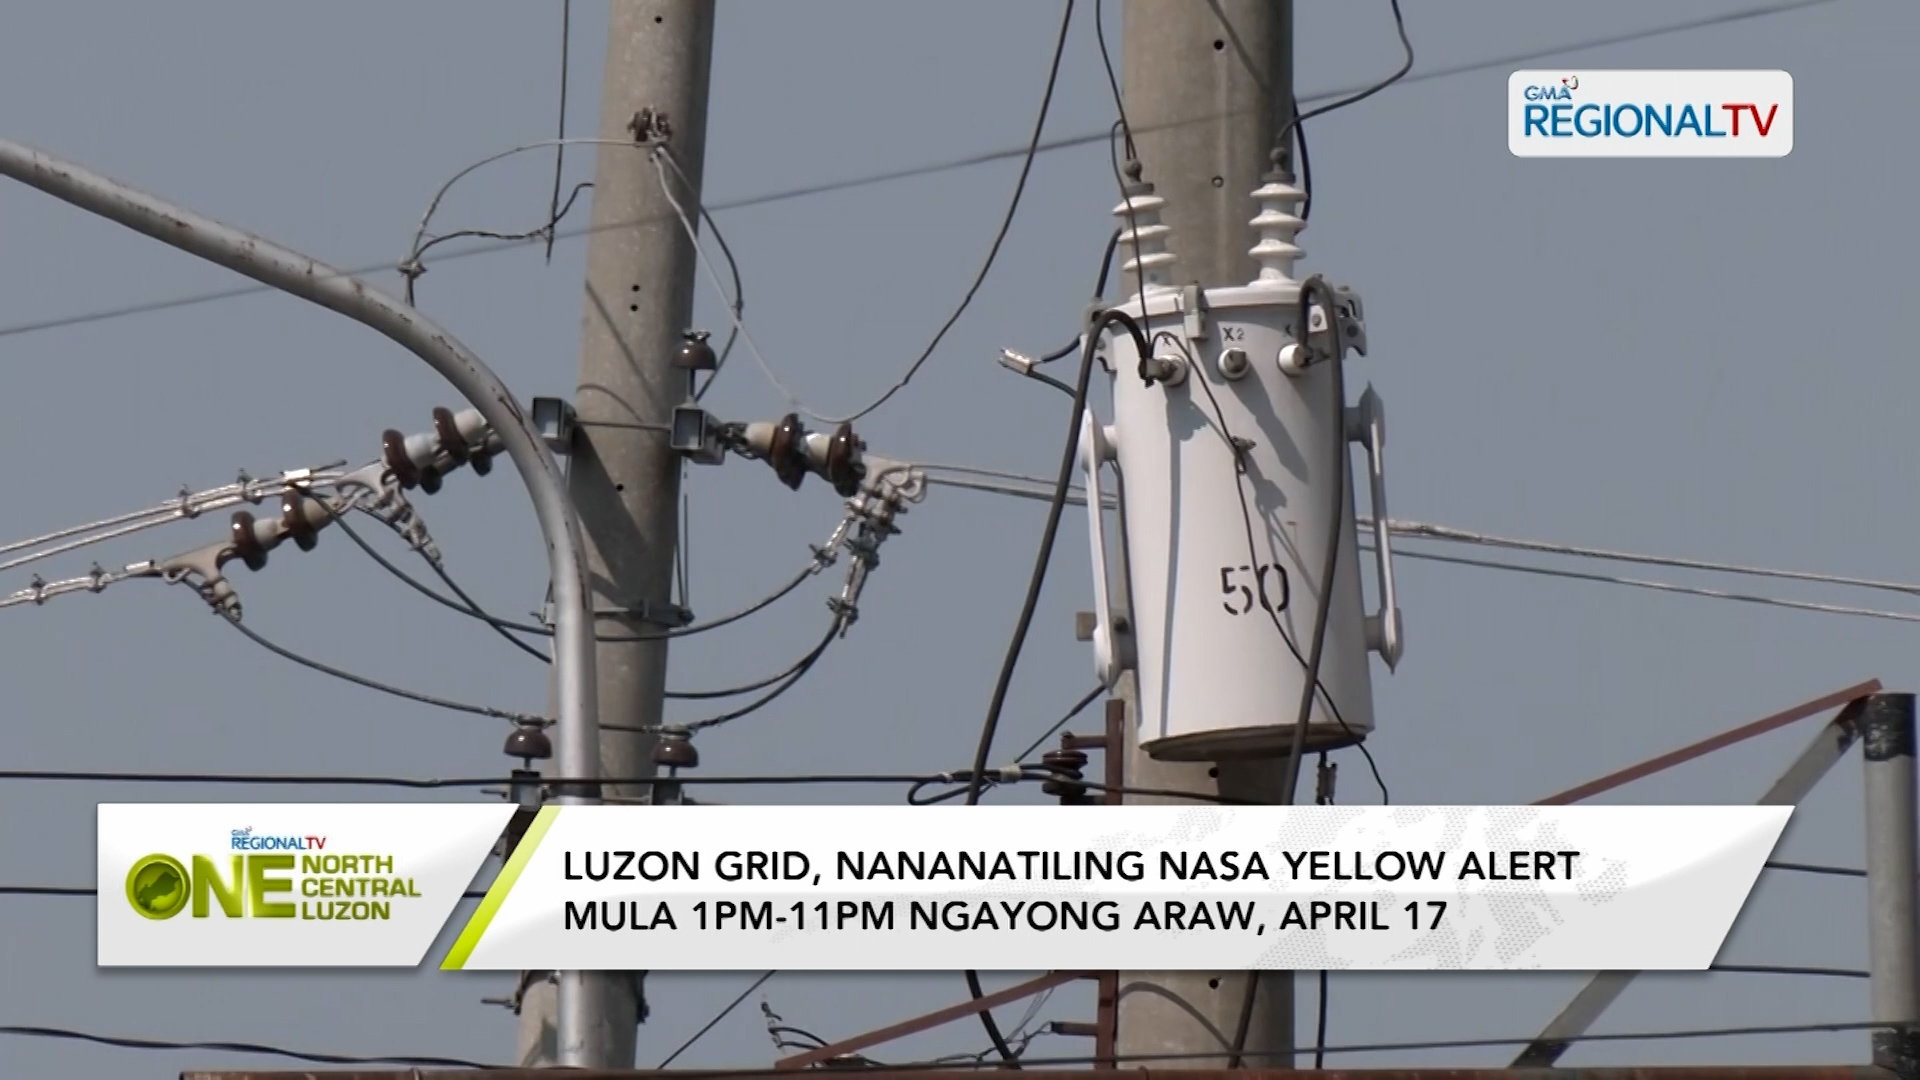 Luzon Grid, nananatiling nasa yellow alert ngayong April 17